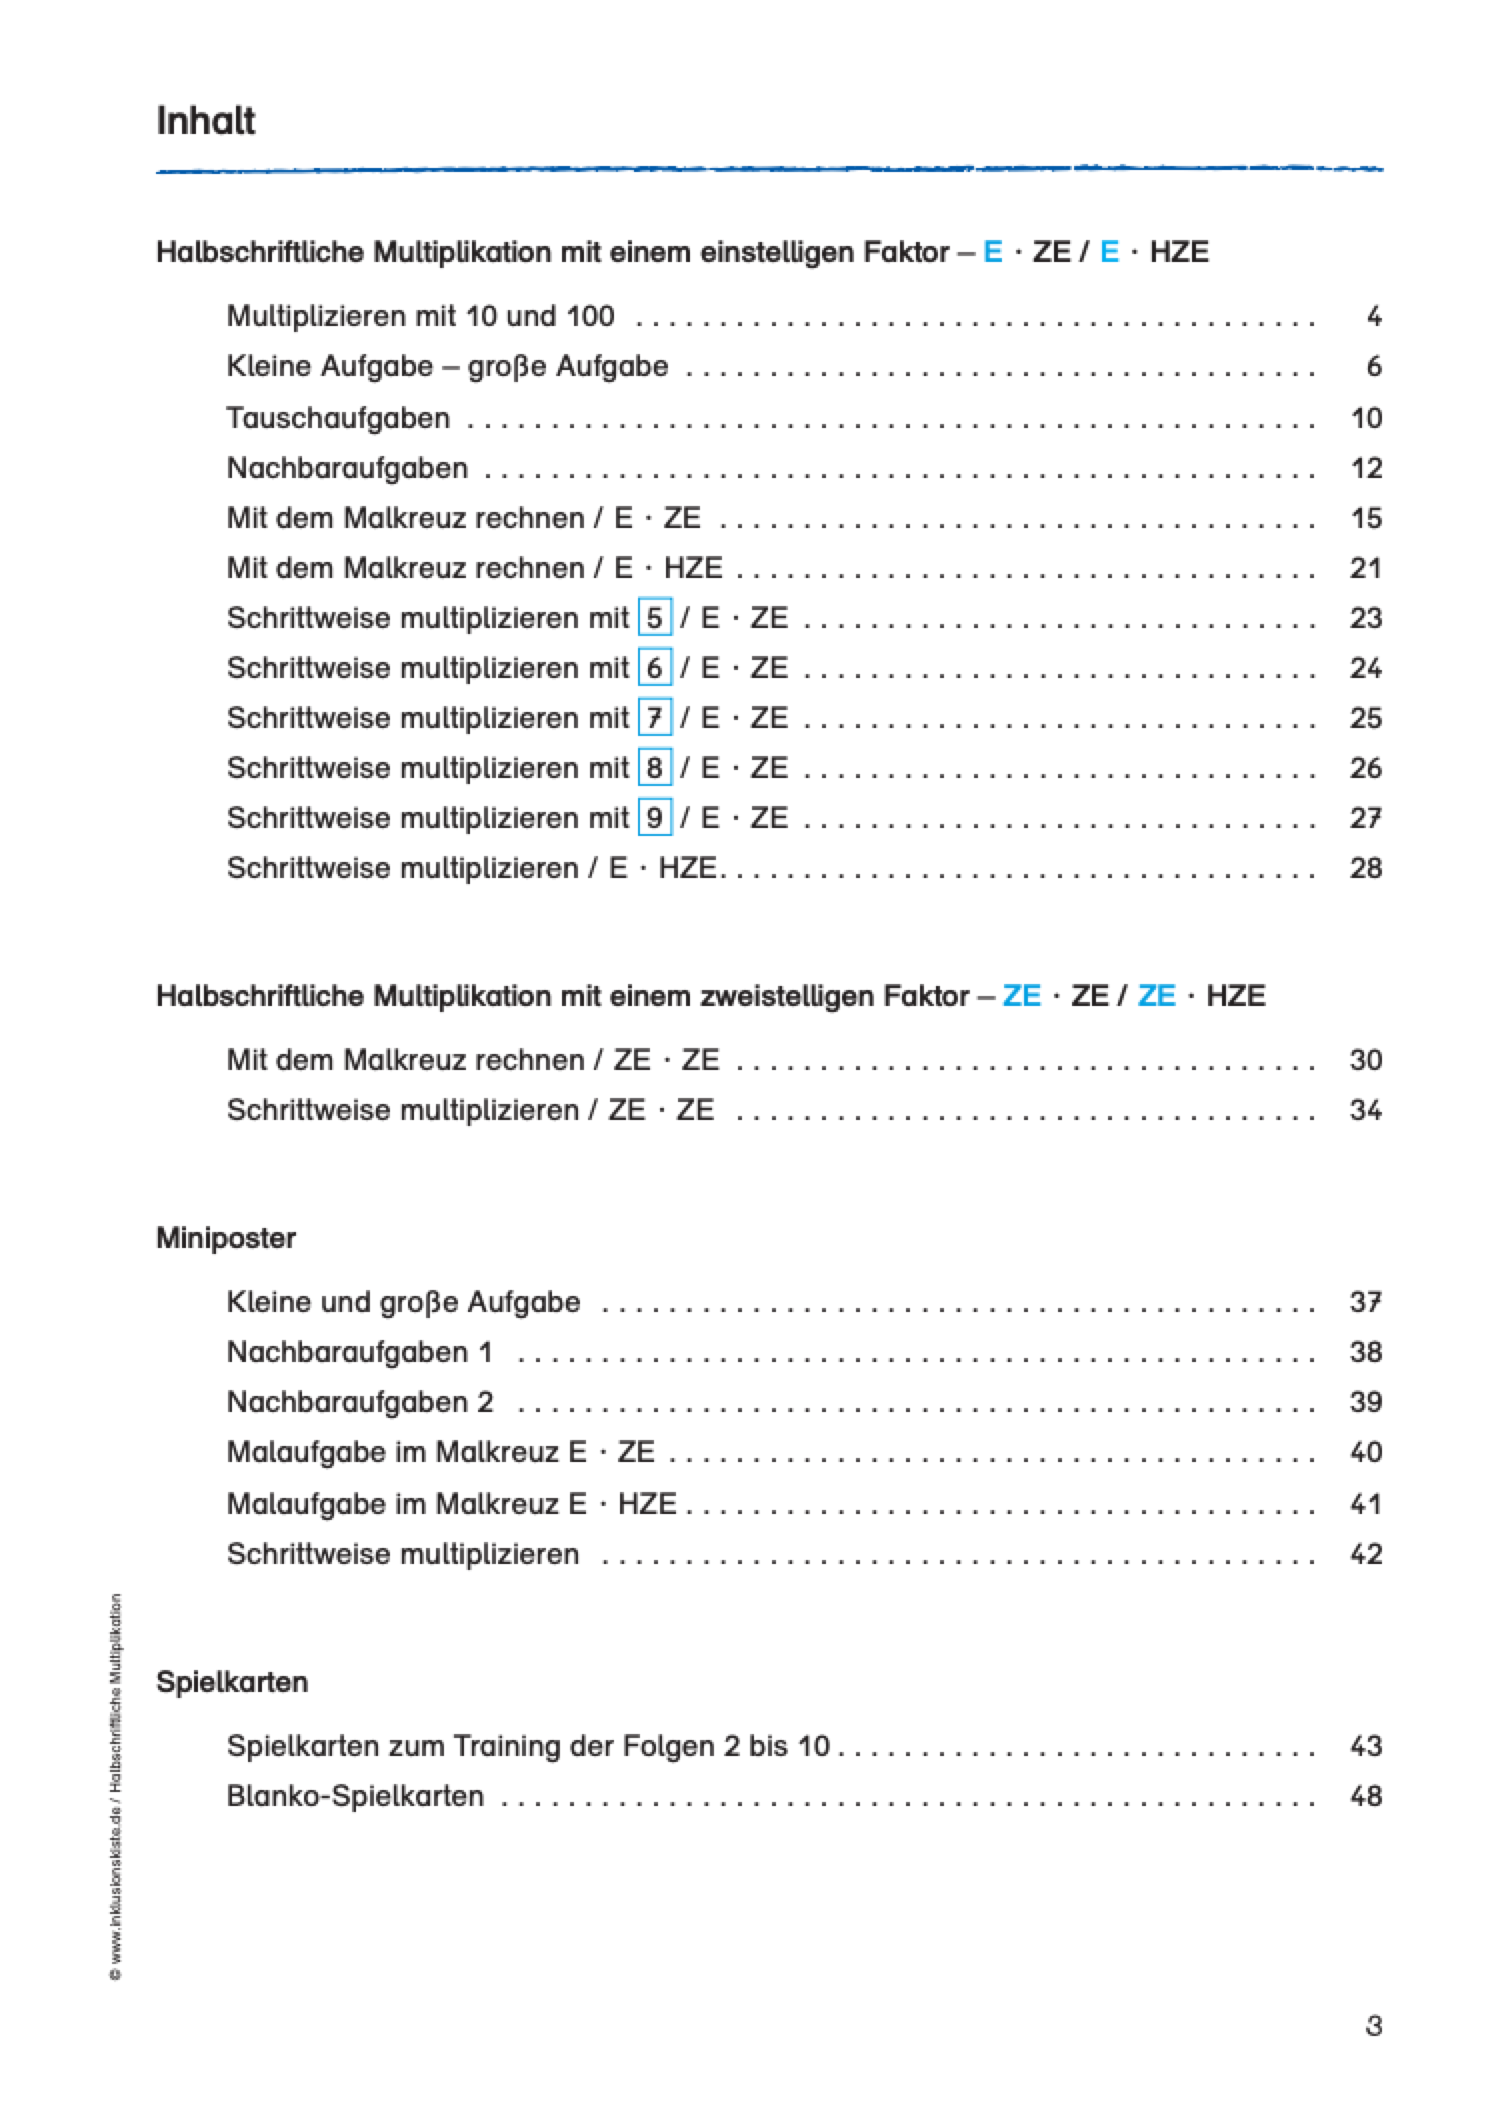 Halbschriftliche Multiplikation / E-BOOK